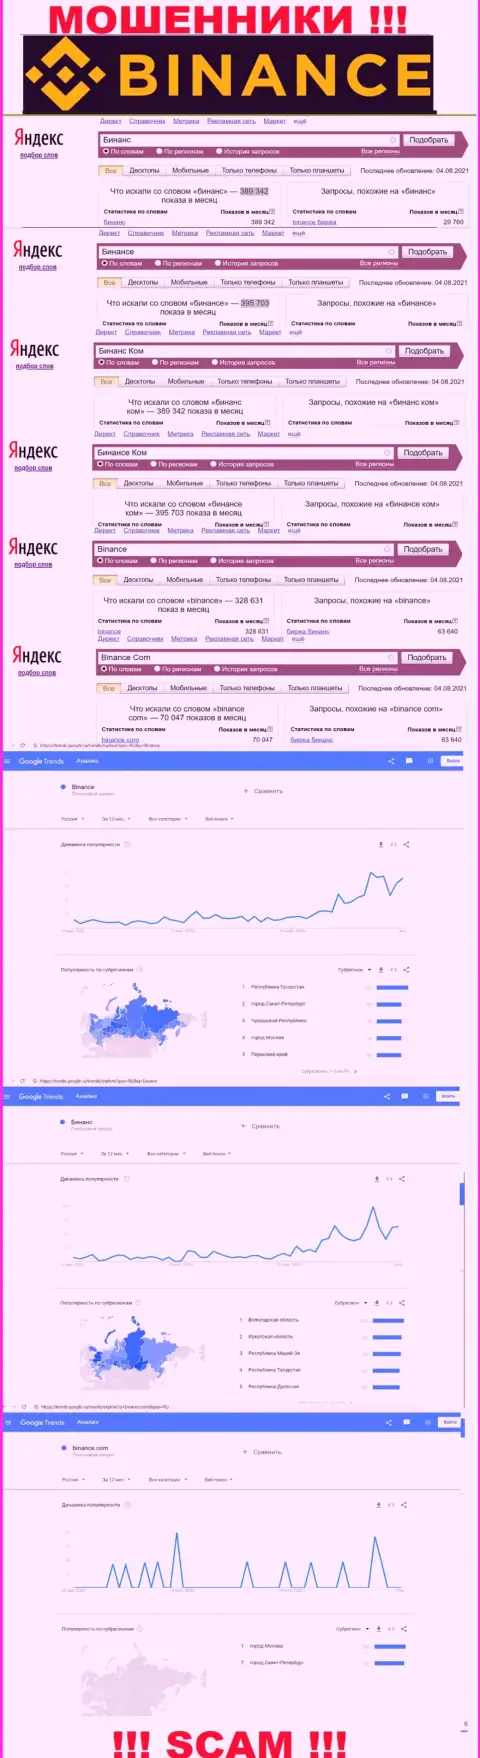 Статистические показатели о запросах в поисковиках всемирной паутины сведений об конторе Binance